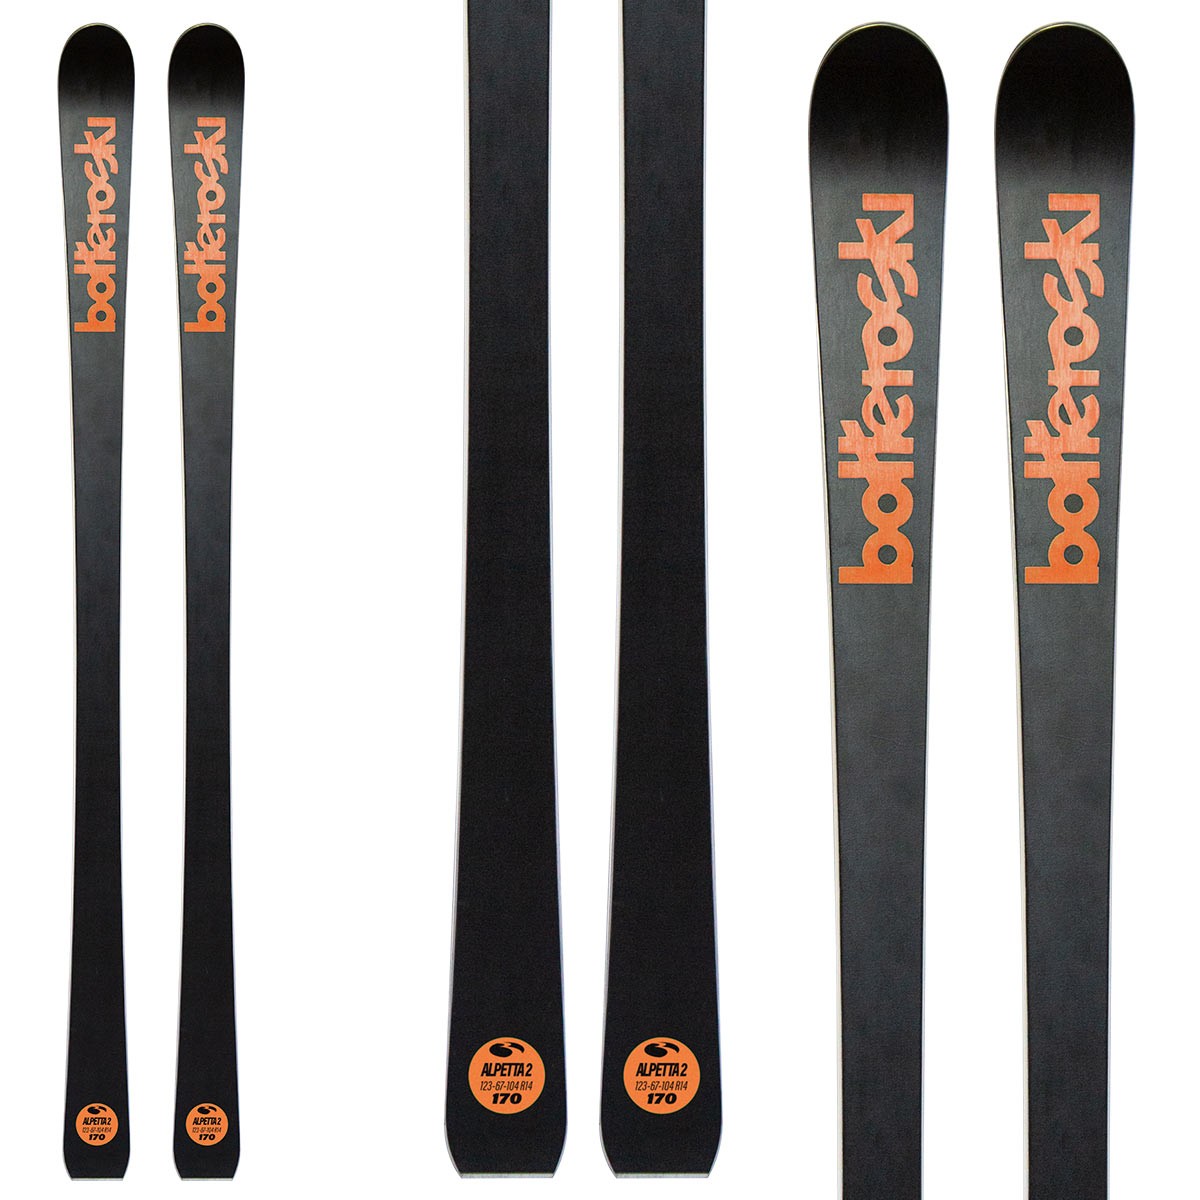  Sci Bottero Ski Alpetta 2 con attacchi Vsp 310 con Vist Speed Spacer System (Colore: nero-arancio, Taglia: 159) 